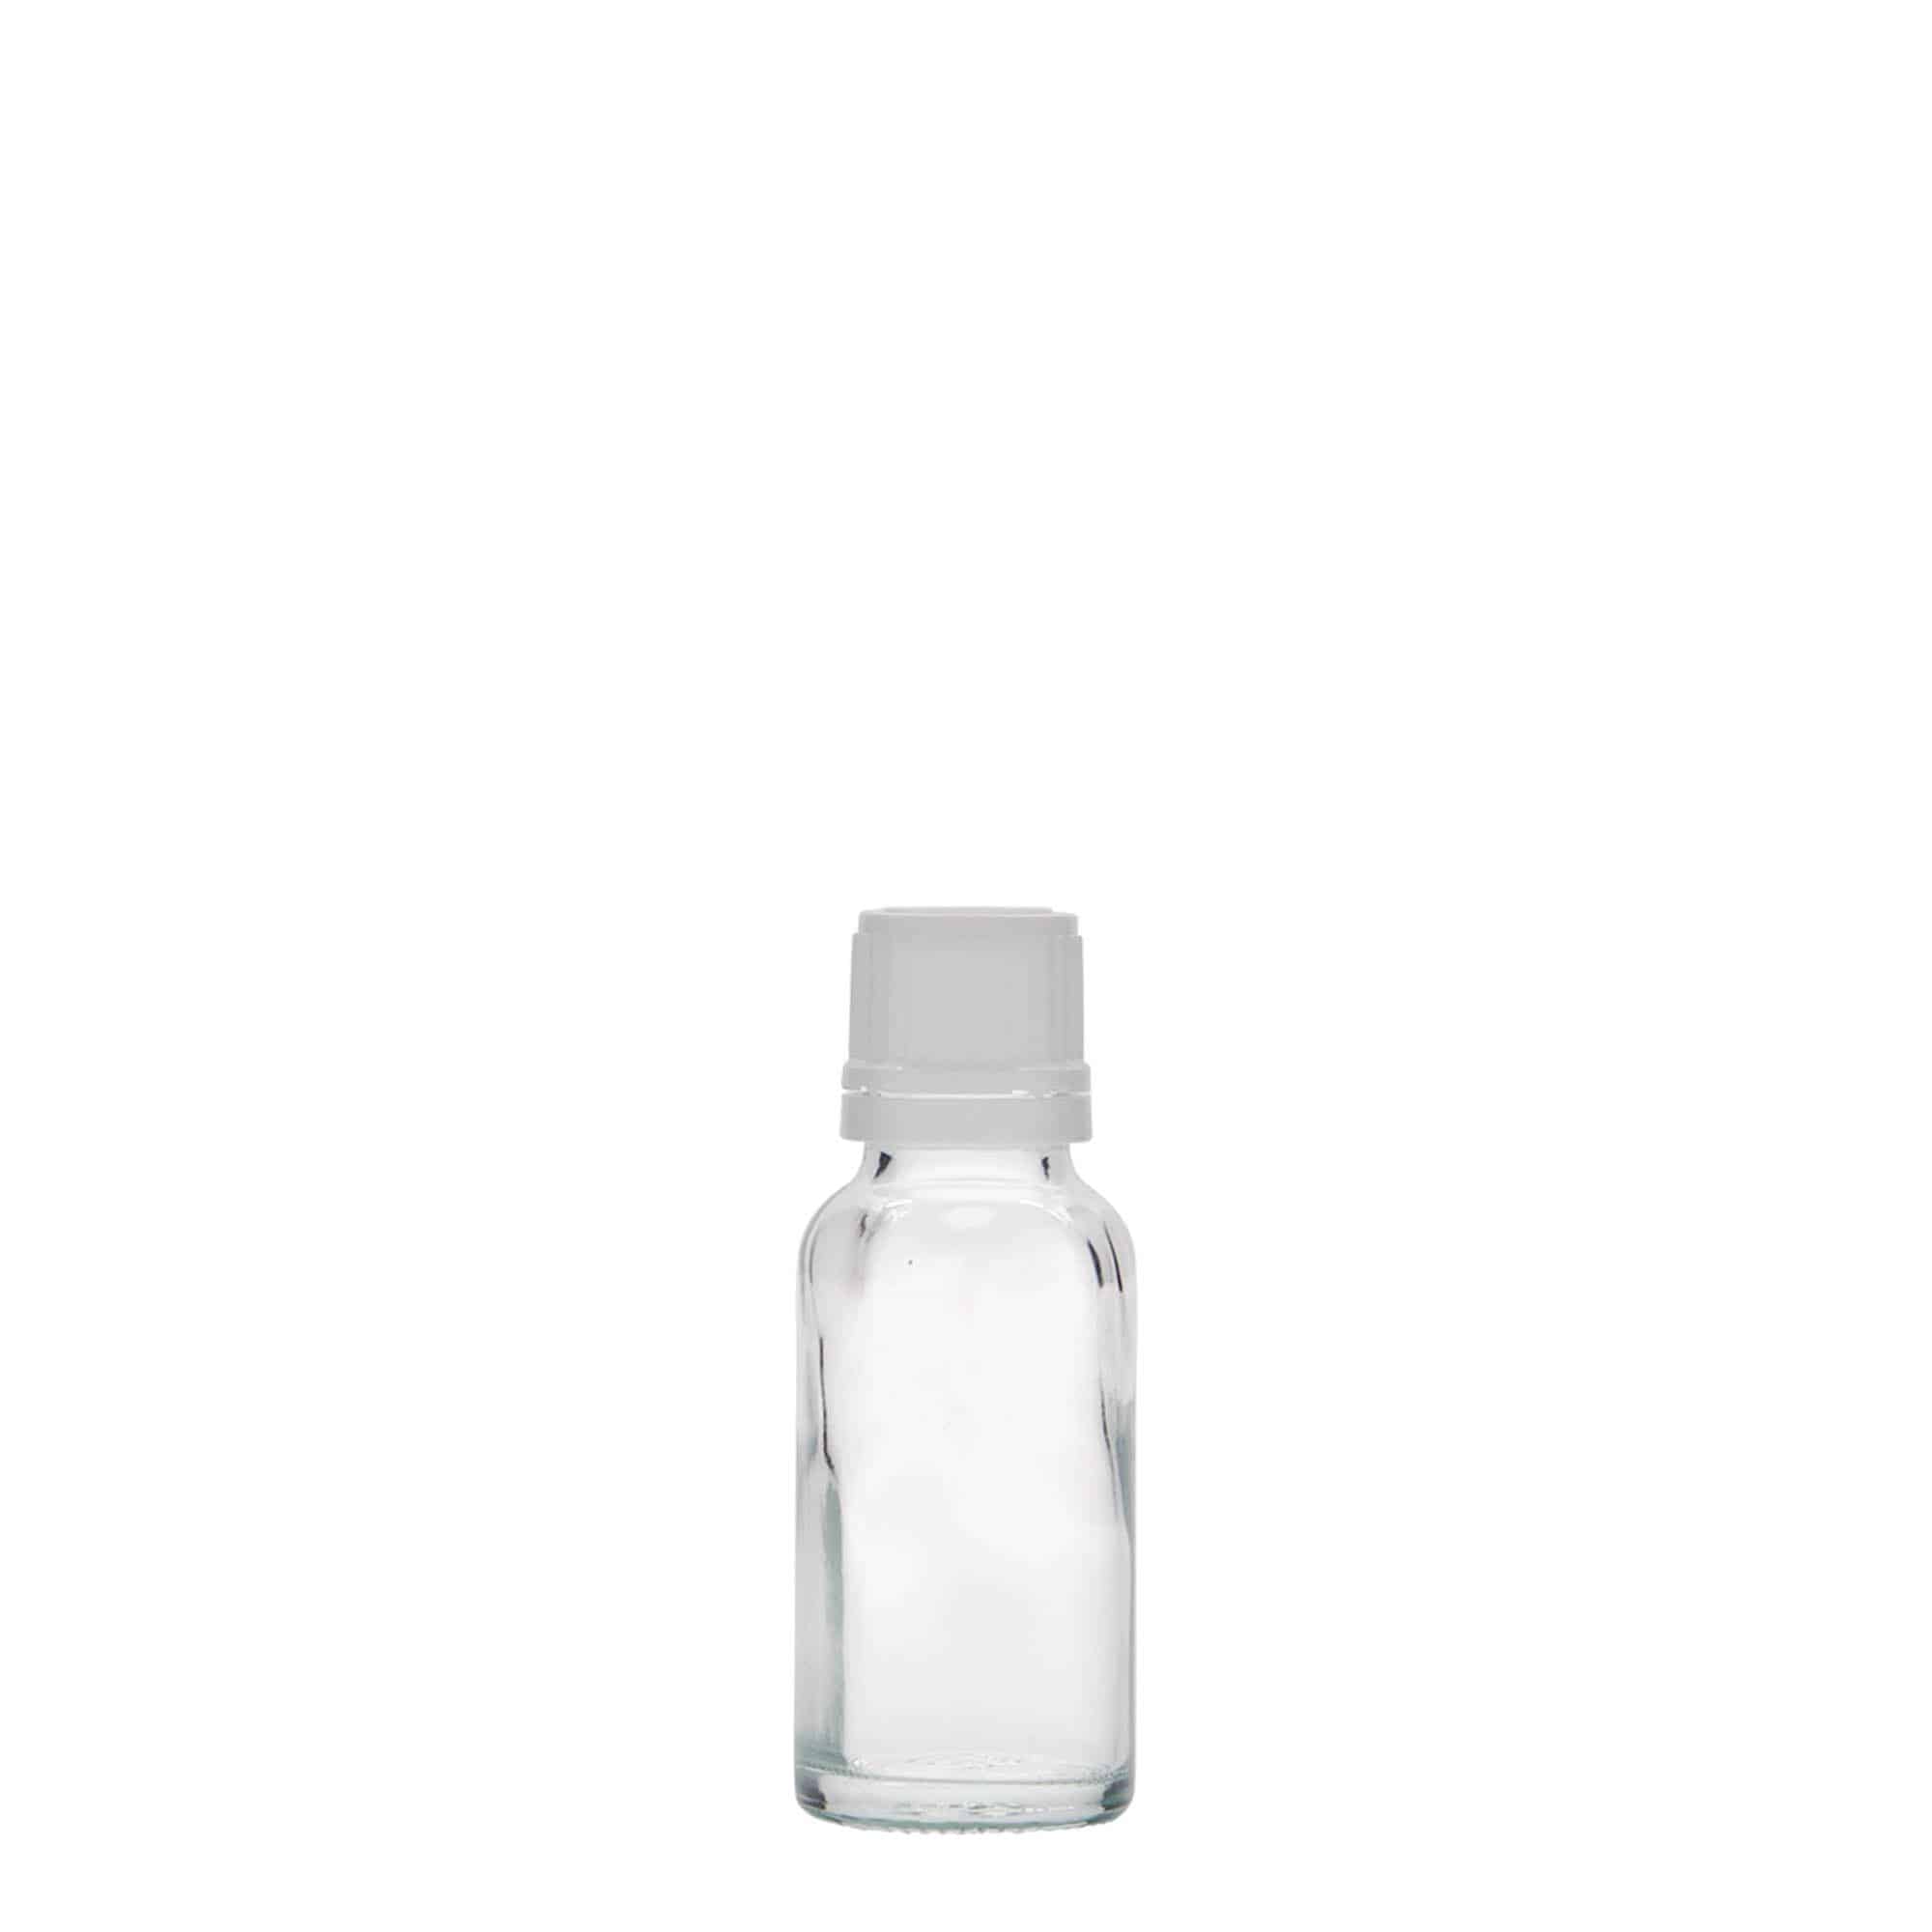 20 ml butelka farmaceutyczna, szkło, zamknięcie: DIN 18